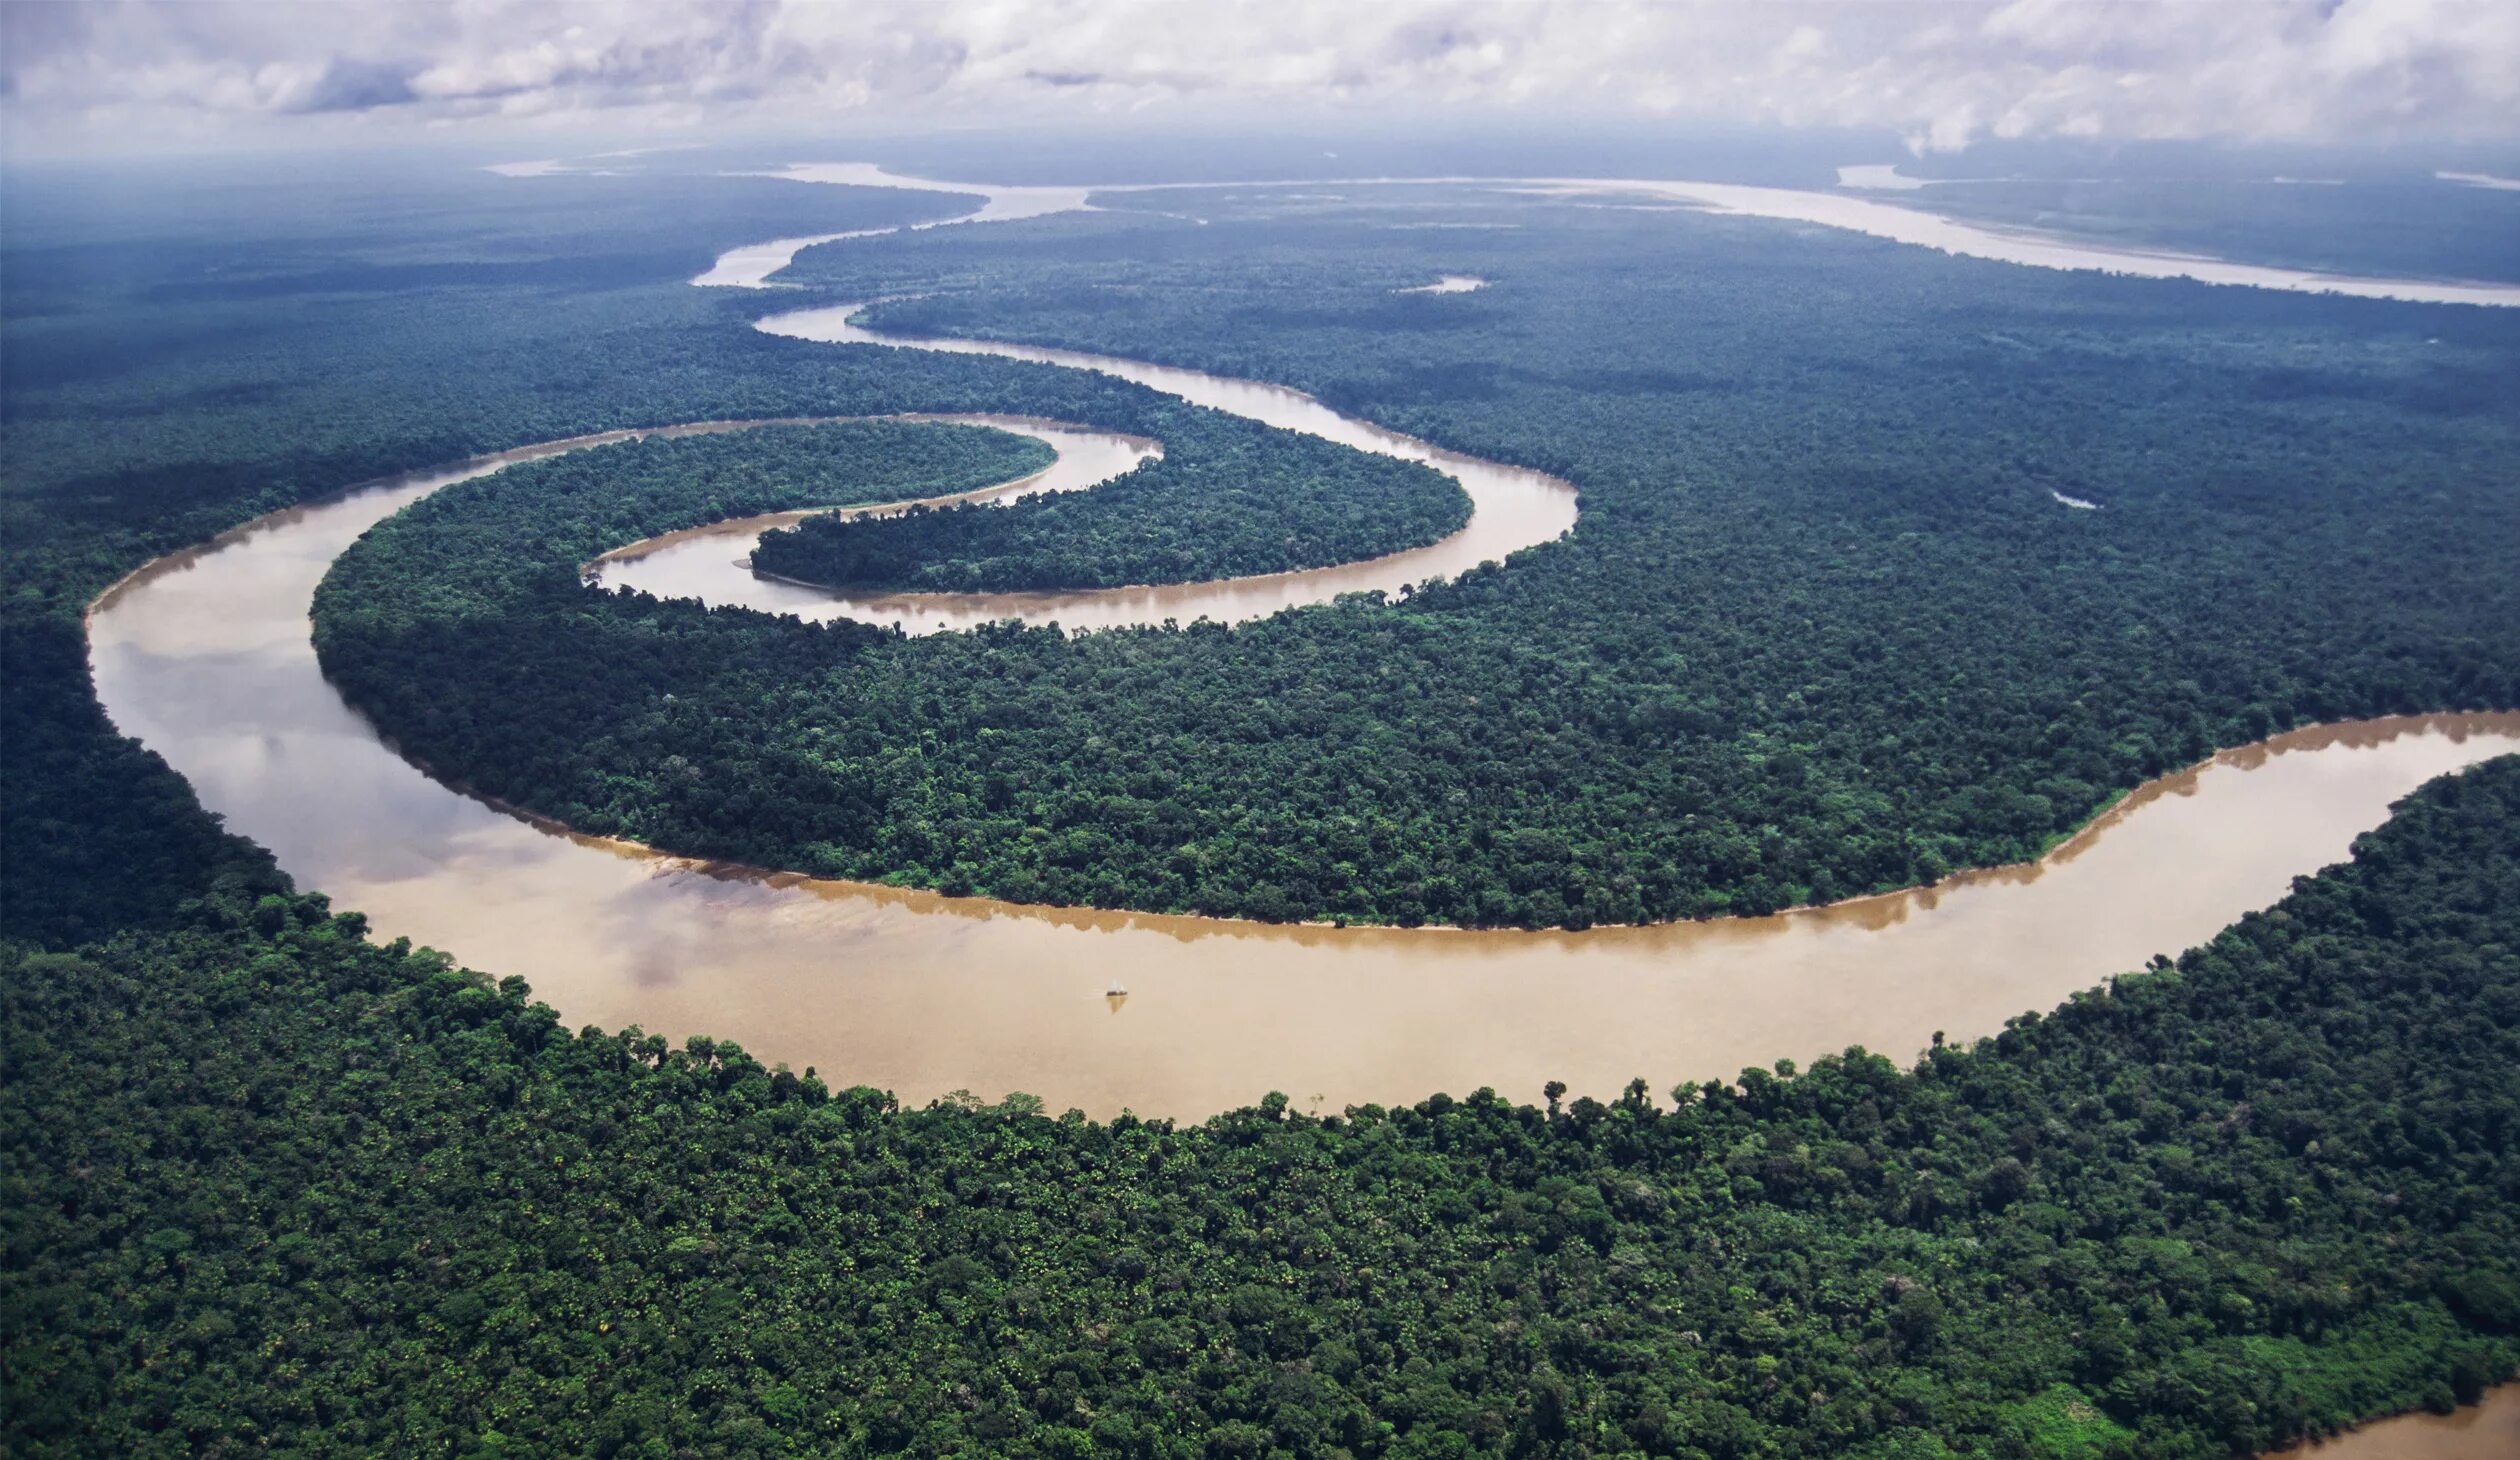 Глубокое озеро южной америки. Бразилия Амазонская низменность. Южная Америка Амазонская низменность. Амазонка река Укаяли.